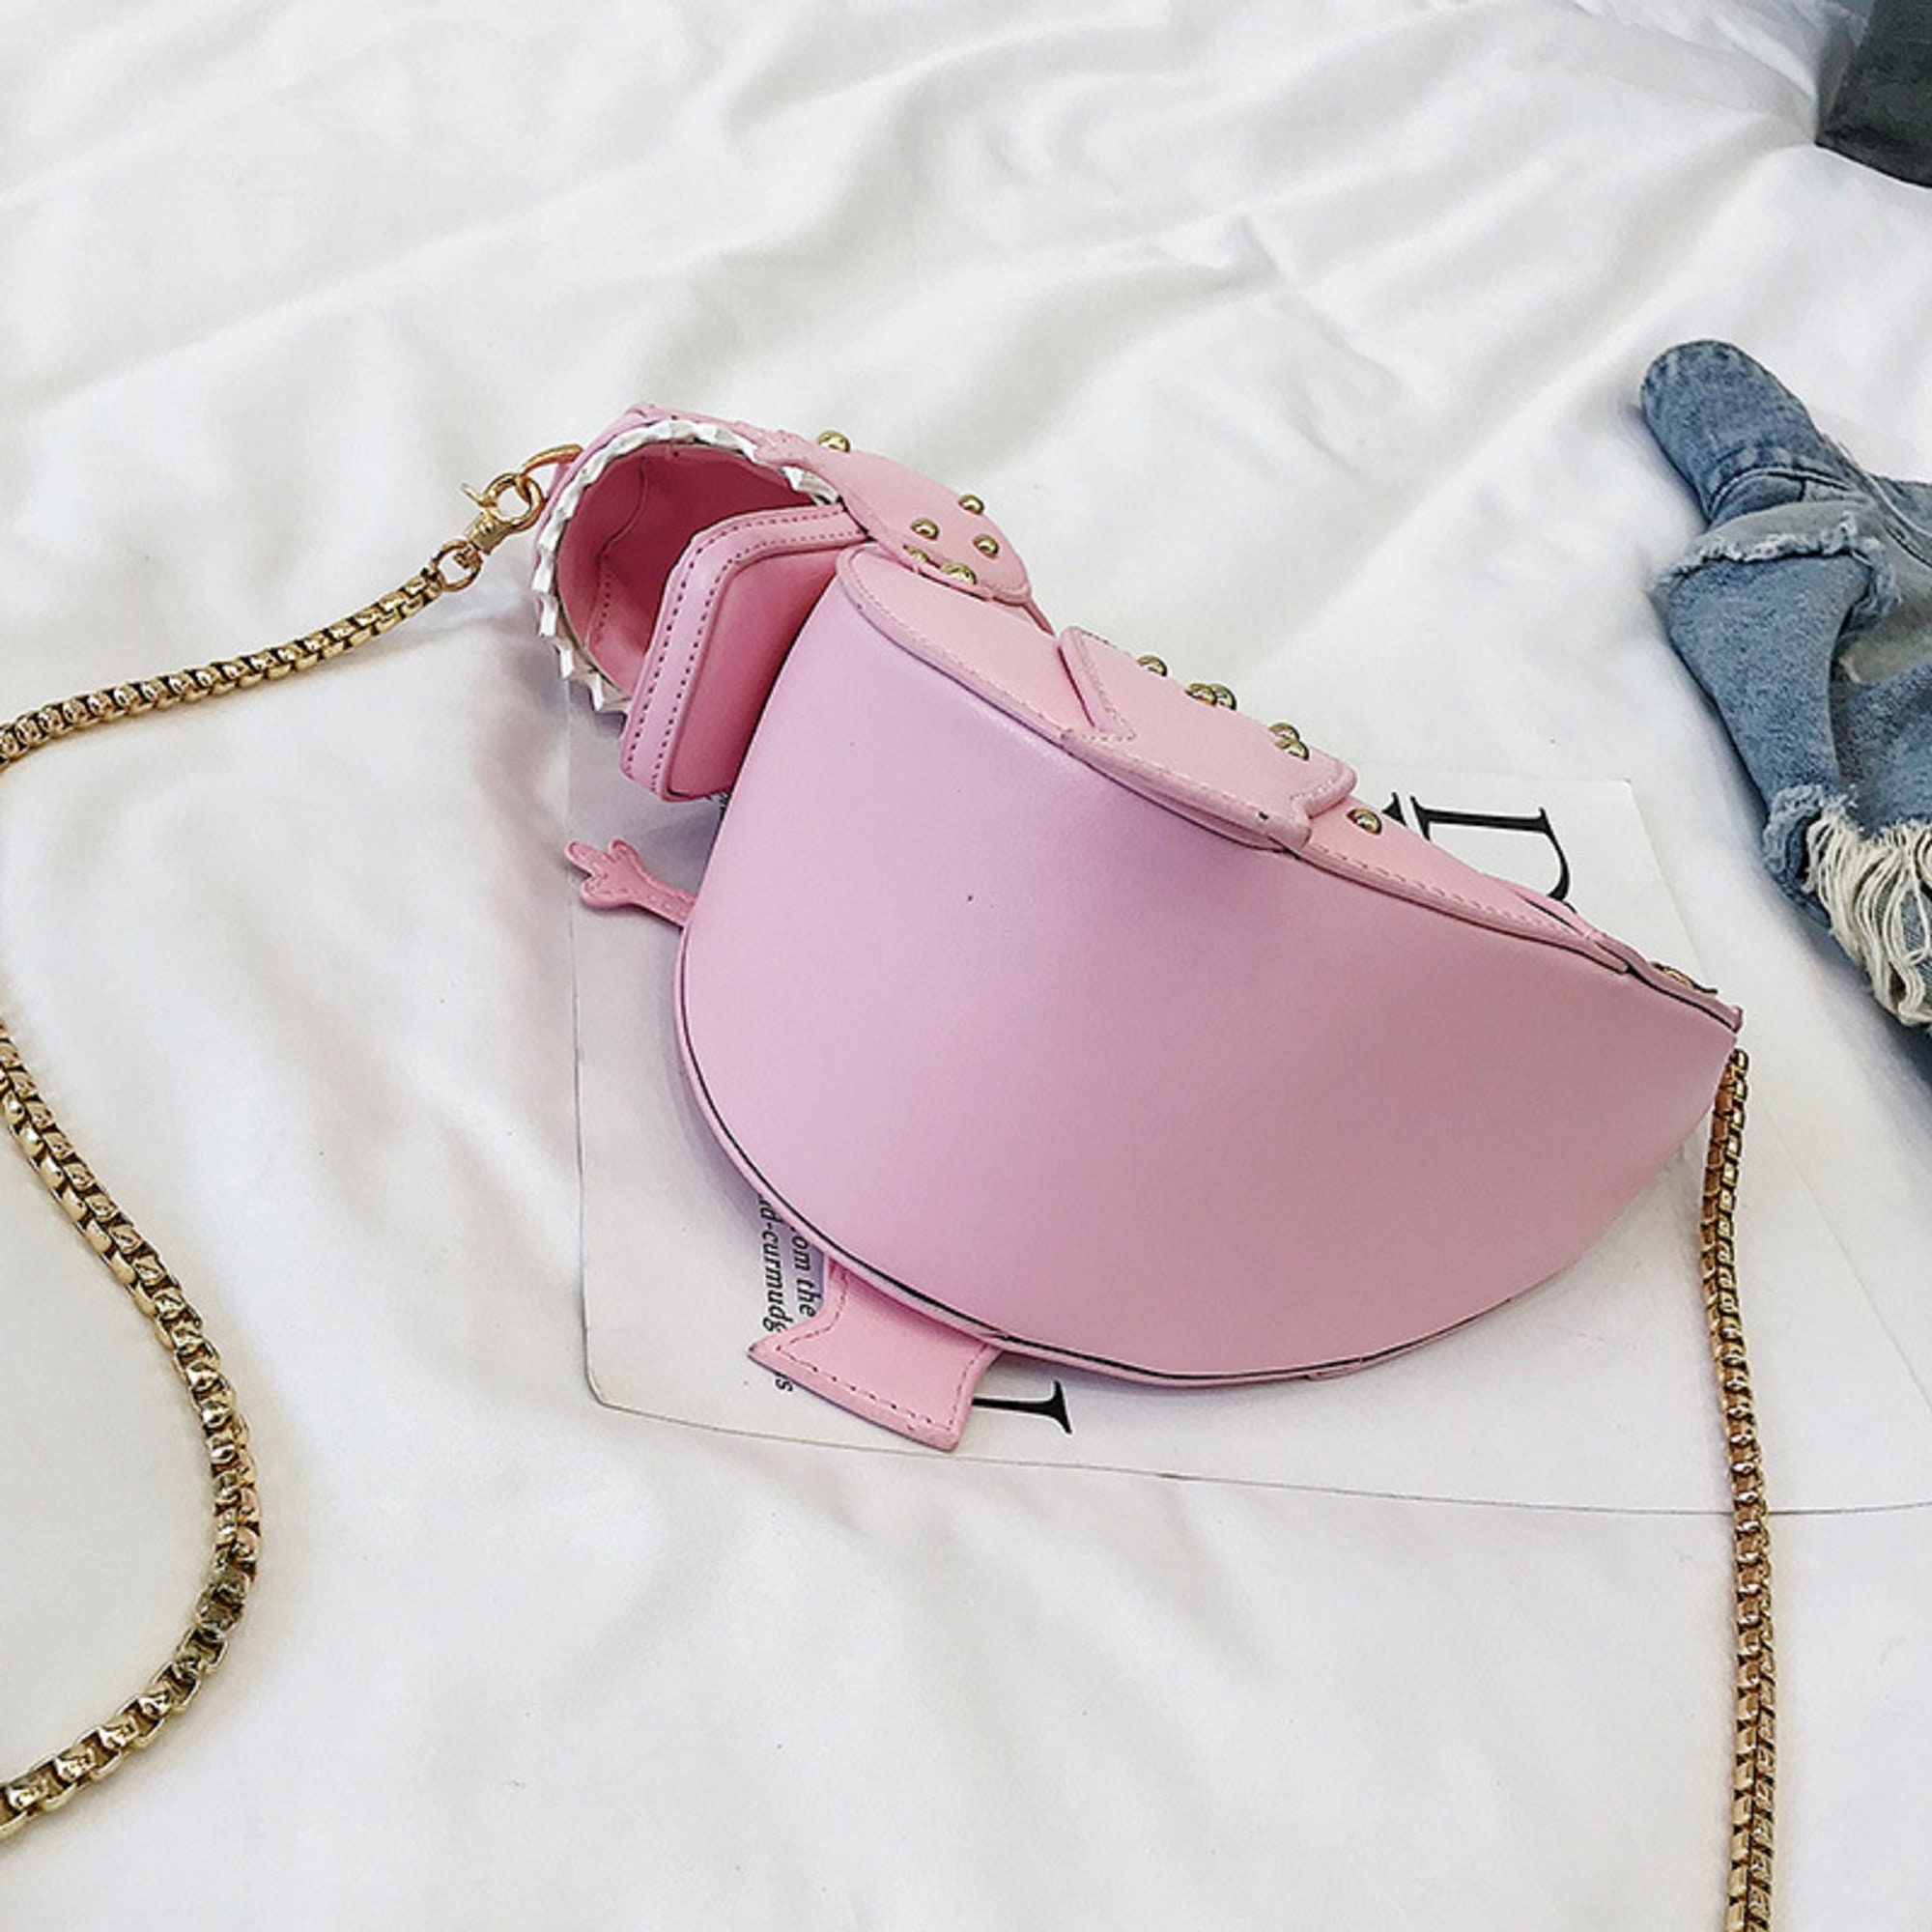 Dinosaur cute handbag purse messenger handbag handbags for | Etsy